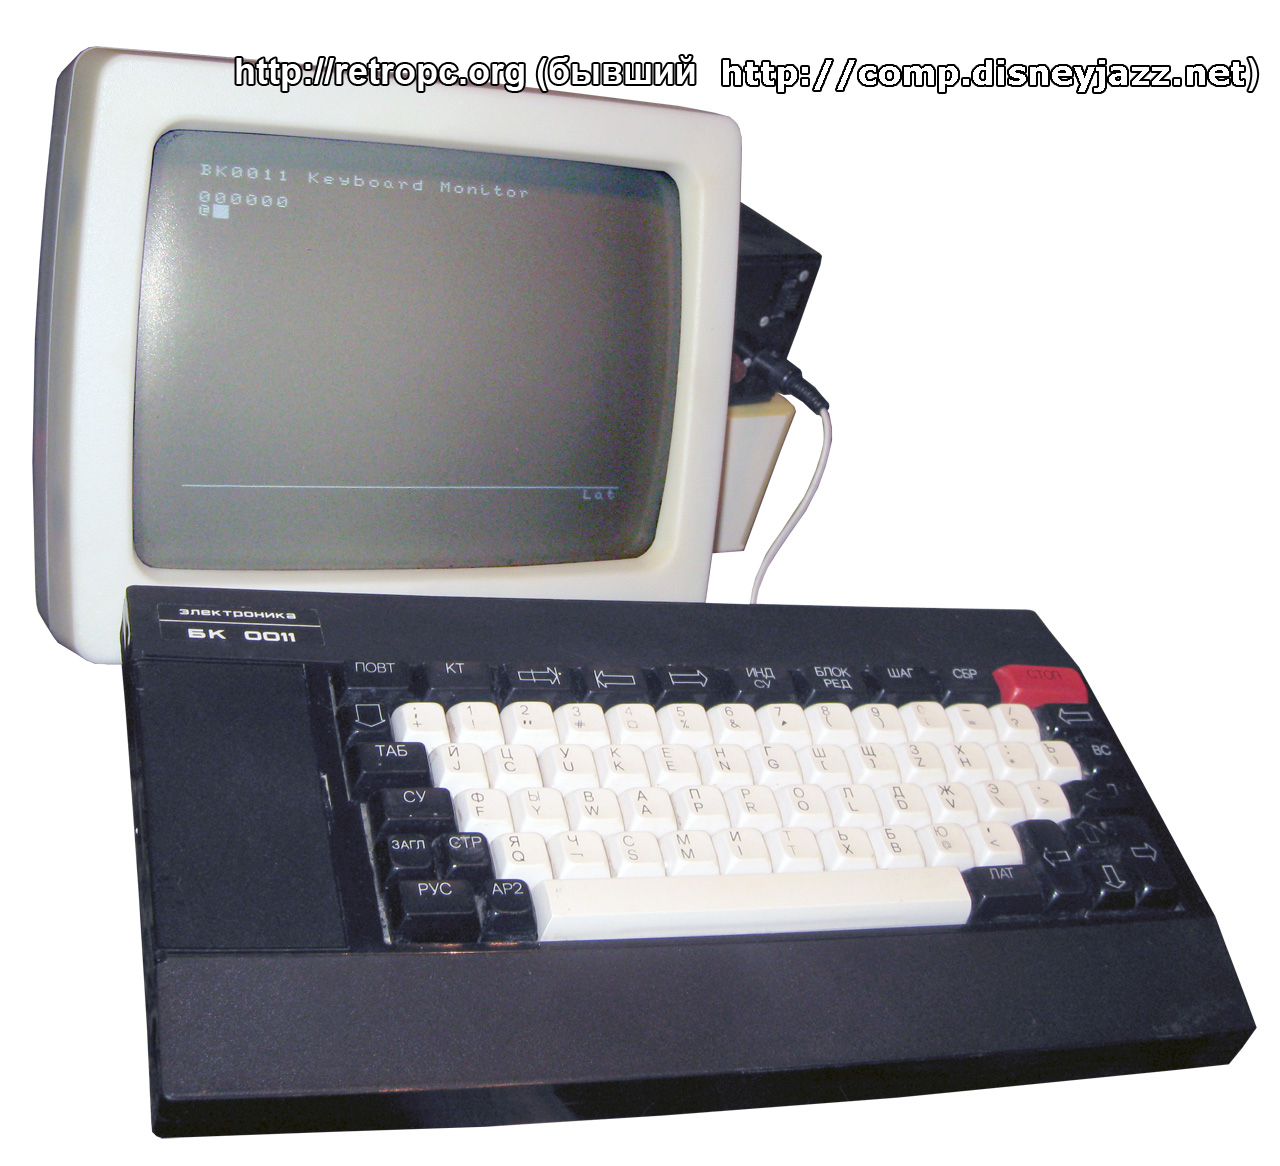 БК 0011 (Бытовой Компьютер) во включенном состоянии - клавиатурный монитор